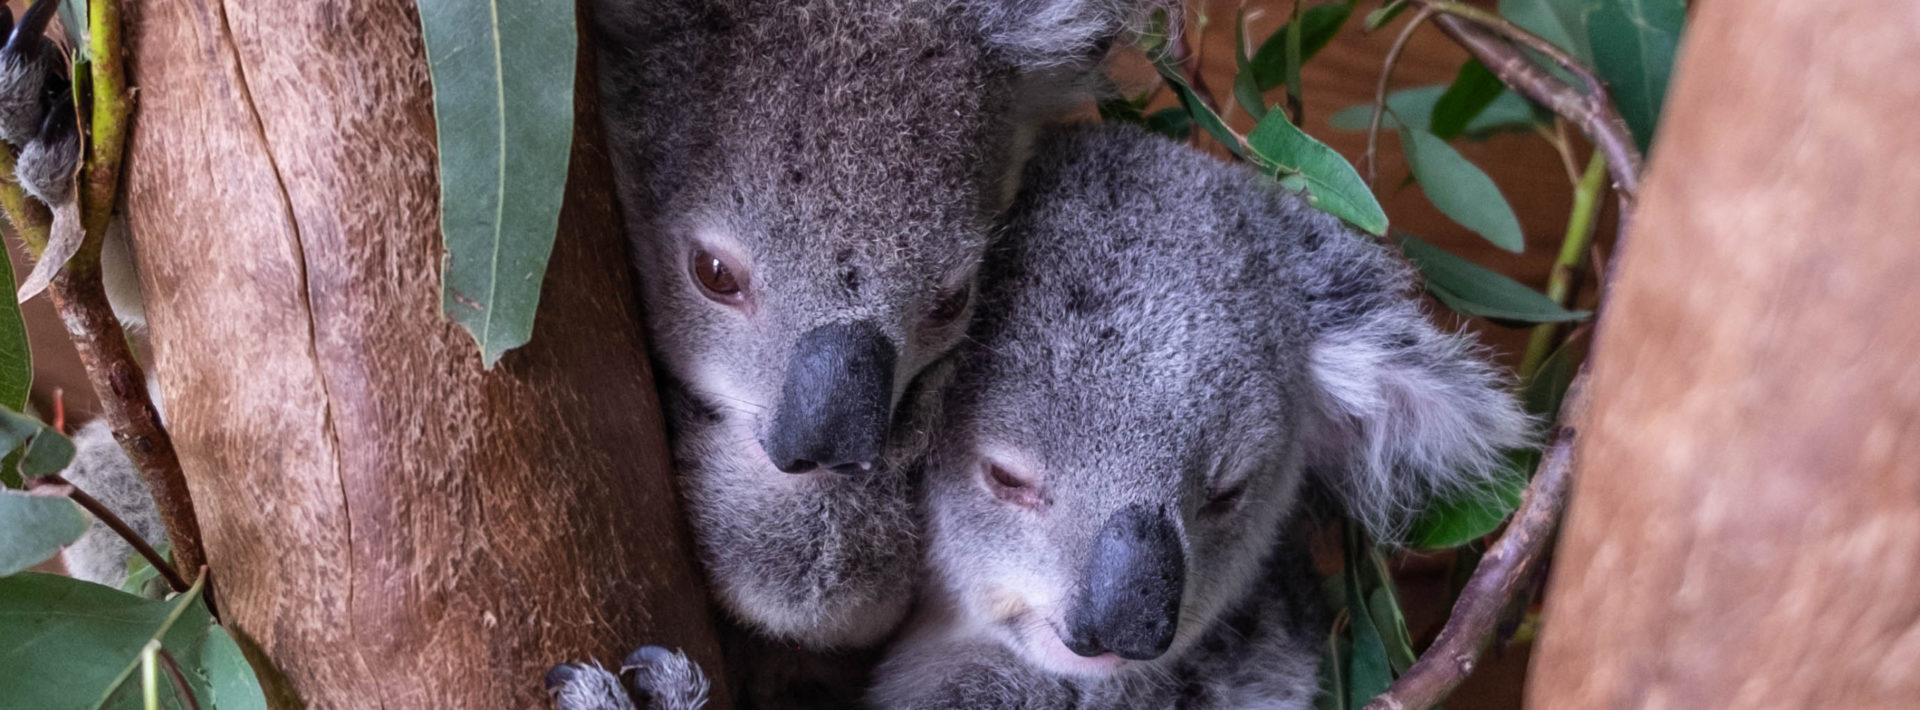 MIT Great Barrier Reef Initiative – Koala Sanctuary